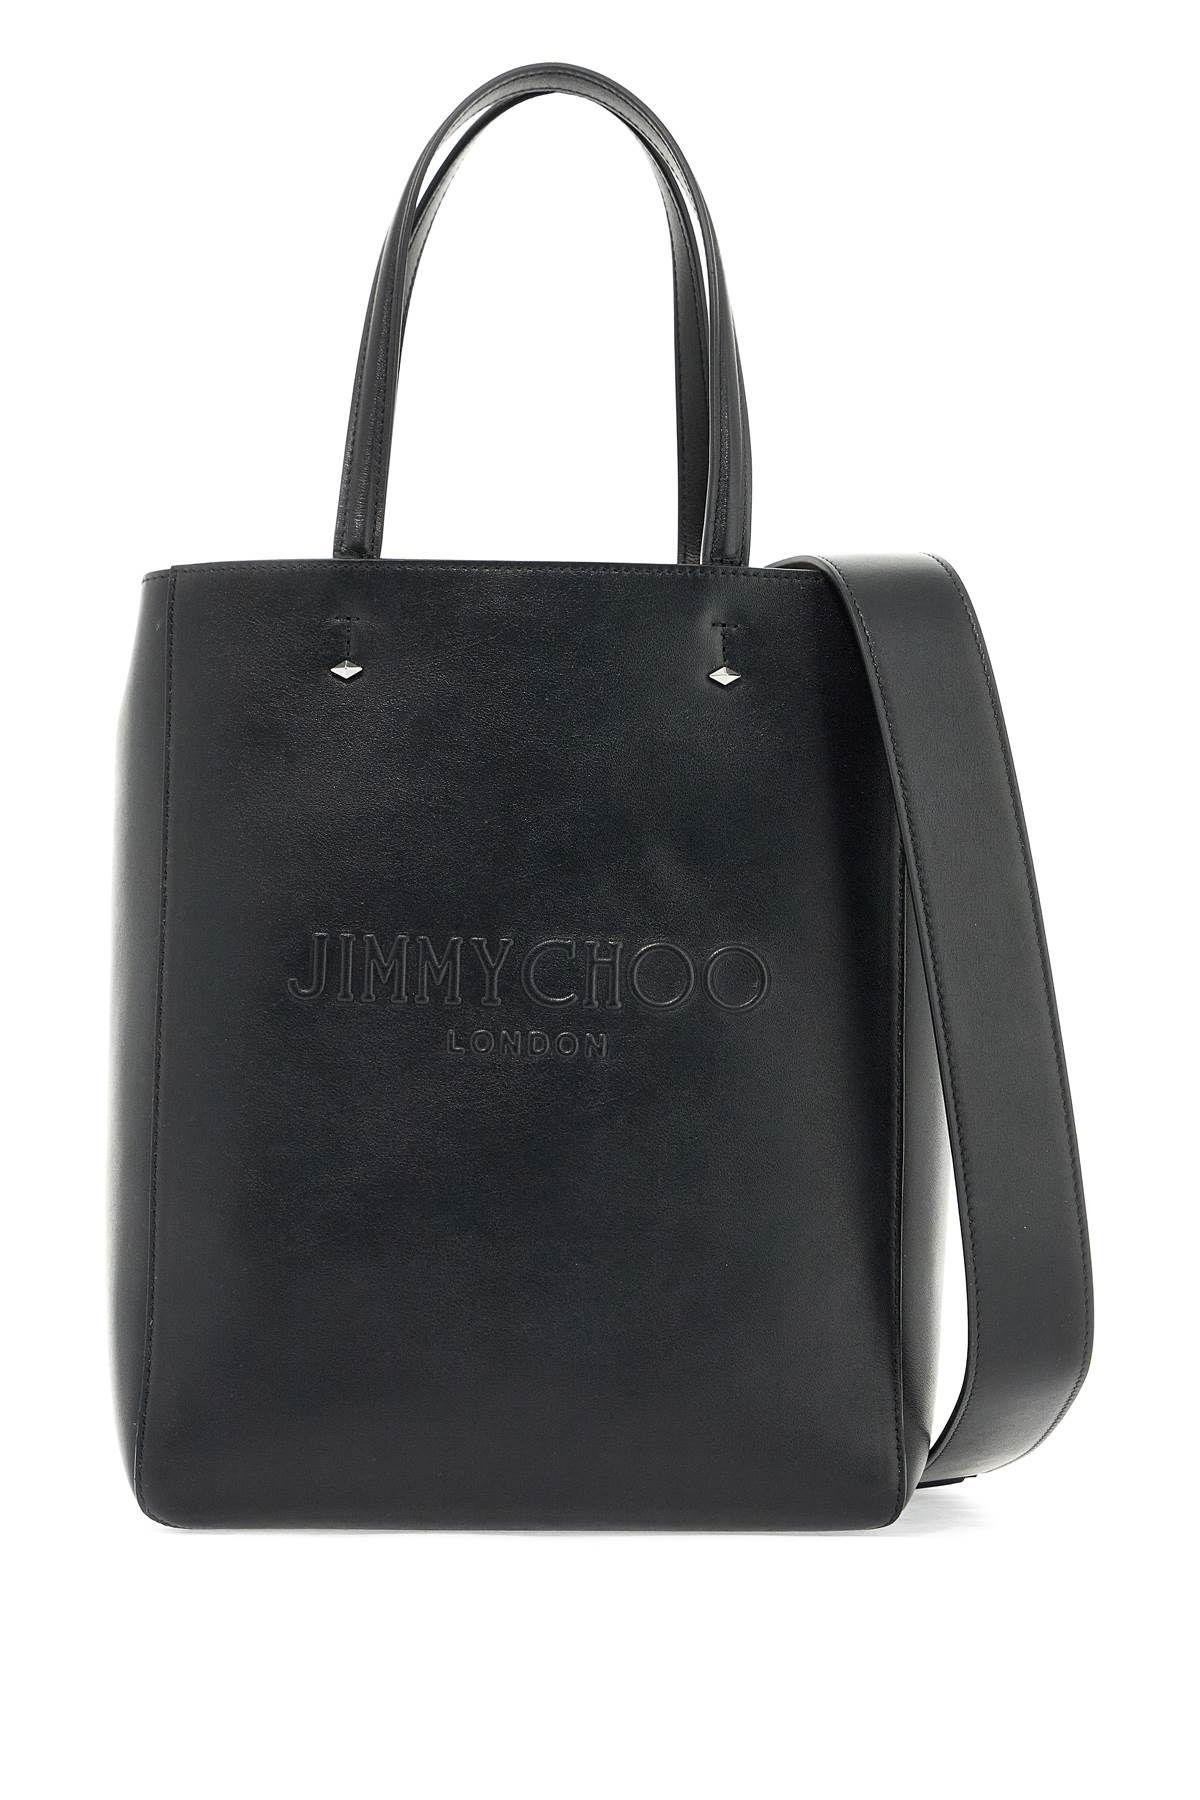 Jimmy Choo JIMMY CHOO smooth leather lenny n/s tote bag.